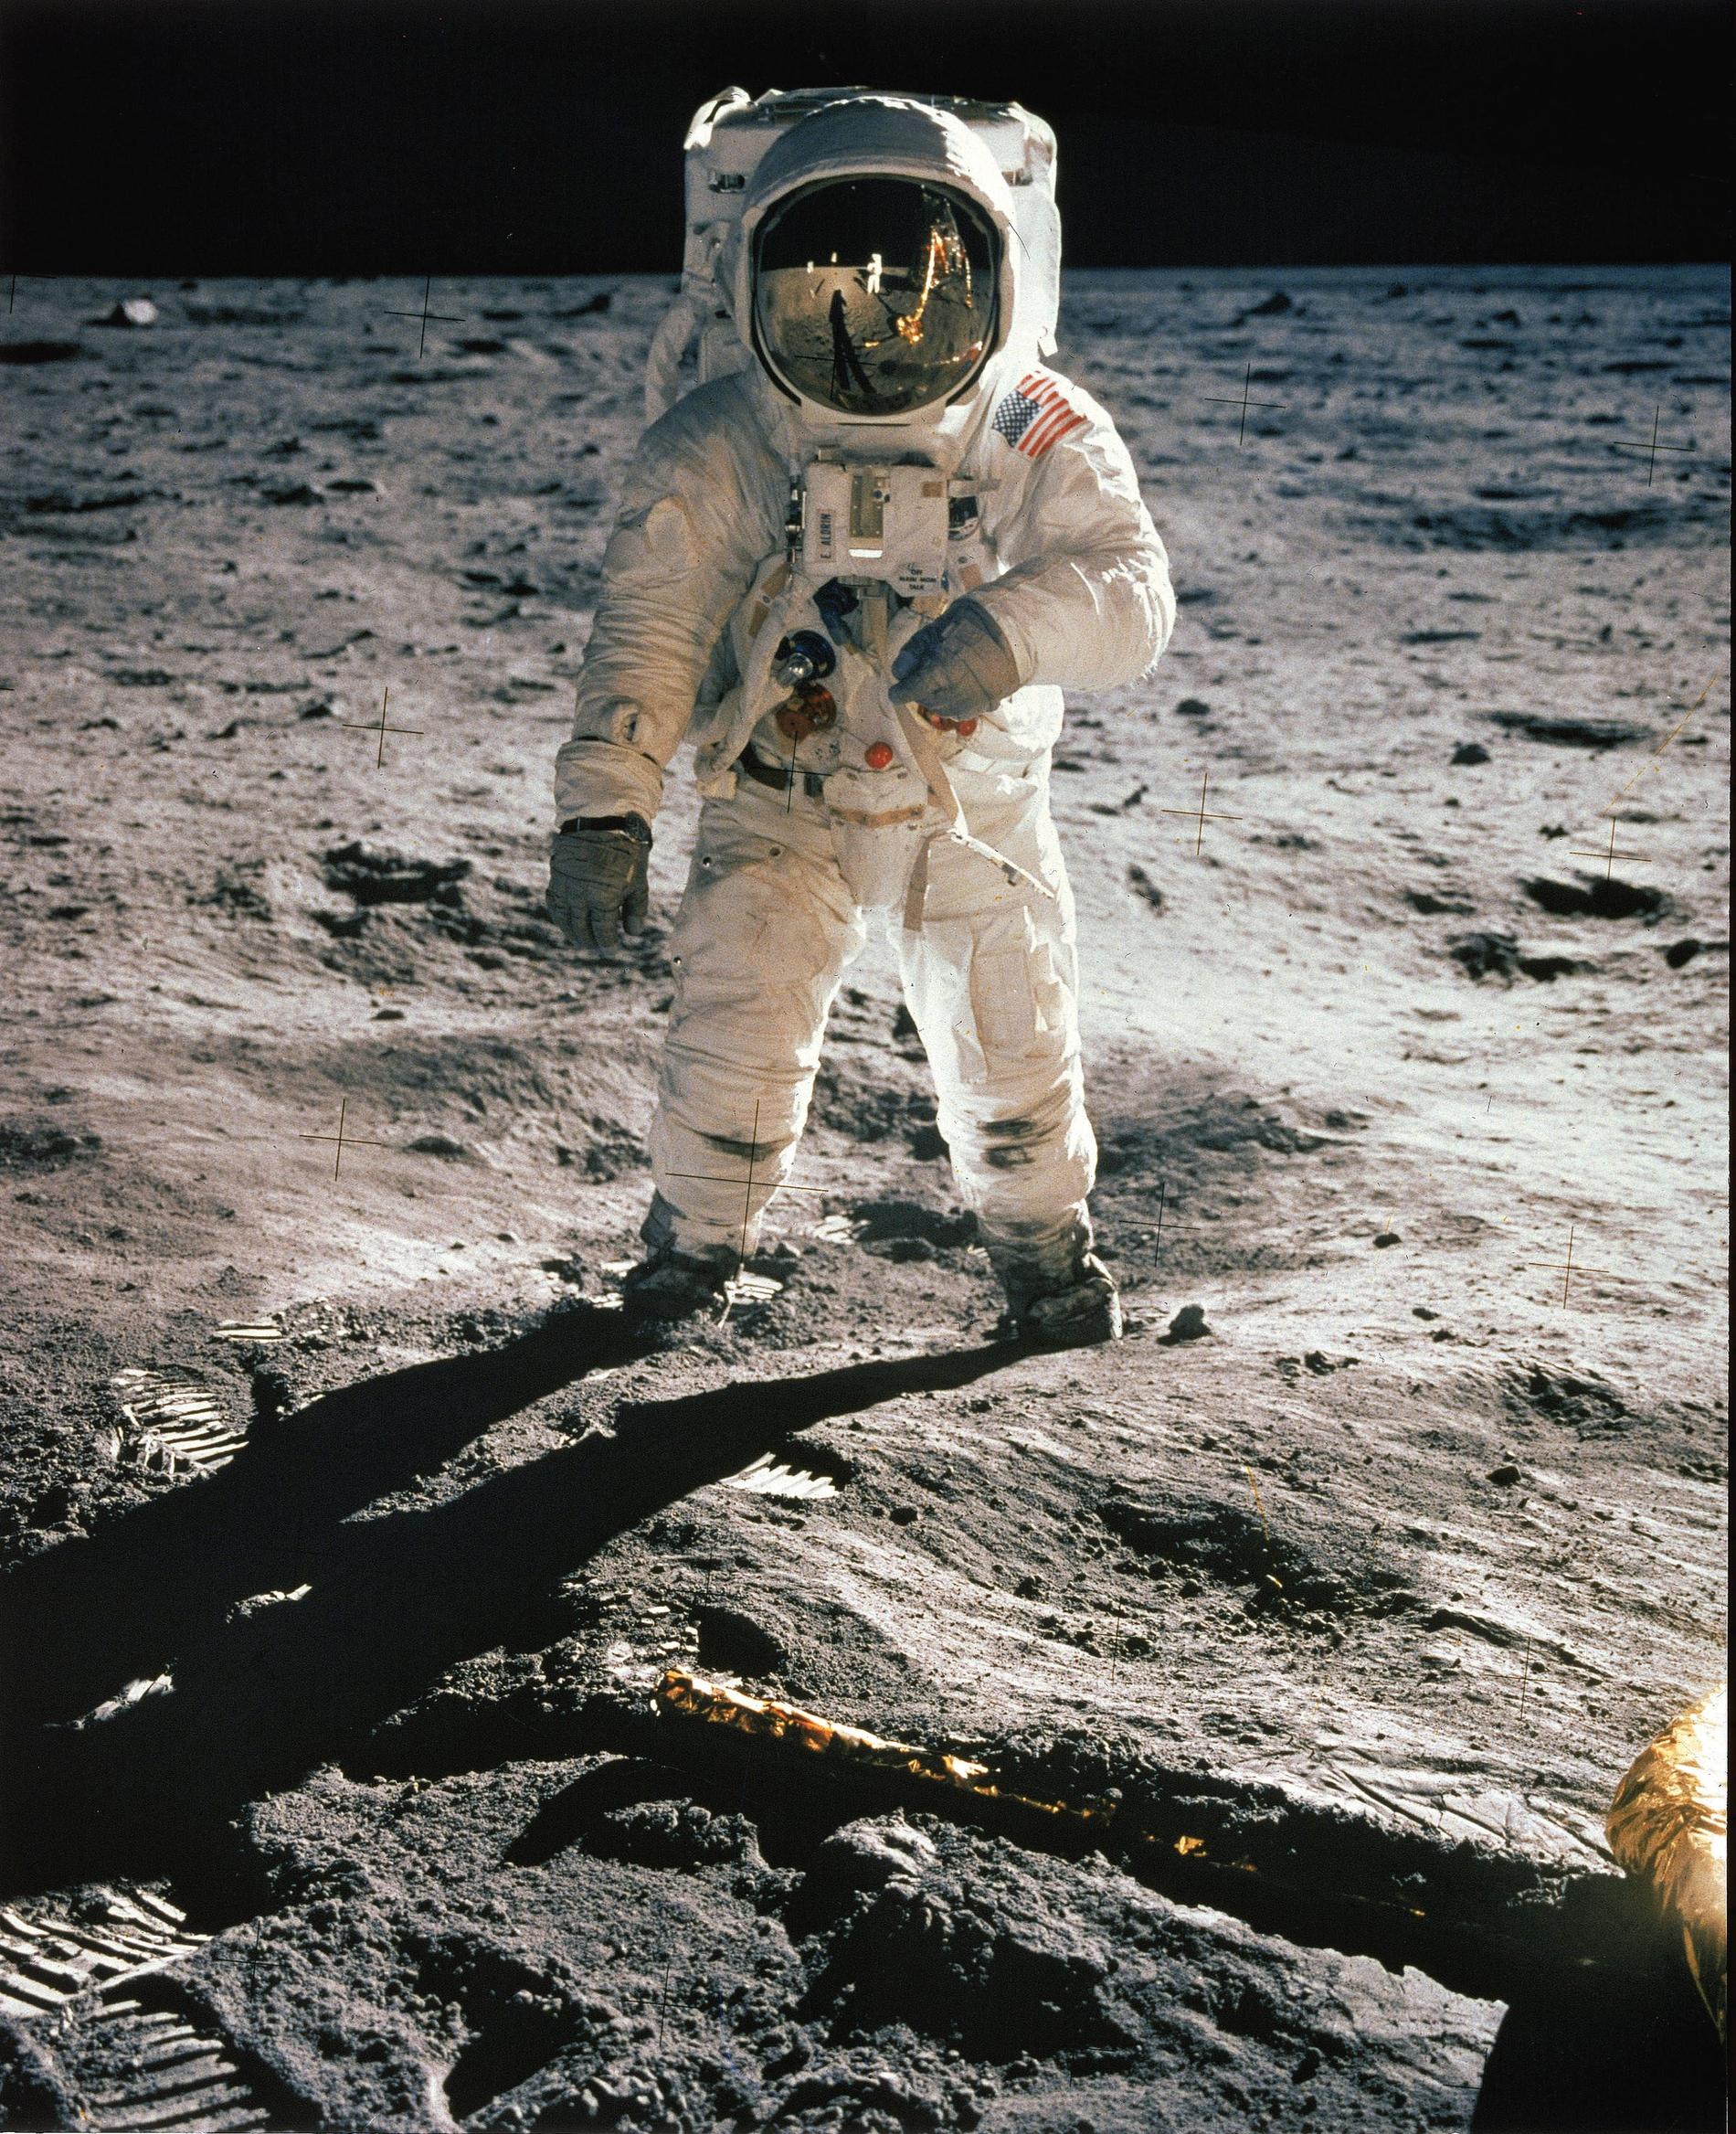 Klocka 21.17 den 20 juli 1969 tog de mark. Och för första gången var det människor på månen. Inget annat ögonblick i rymdforskningens historia kan konkurrera med denna händelse.